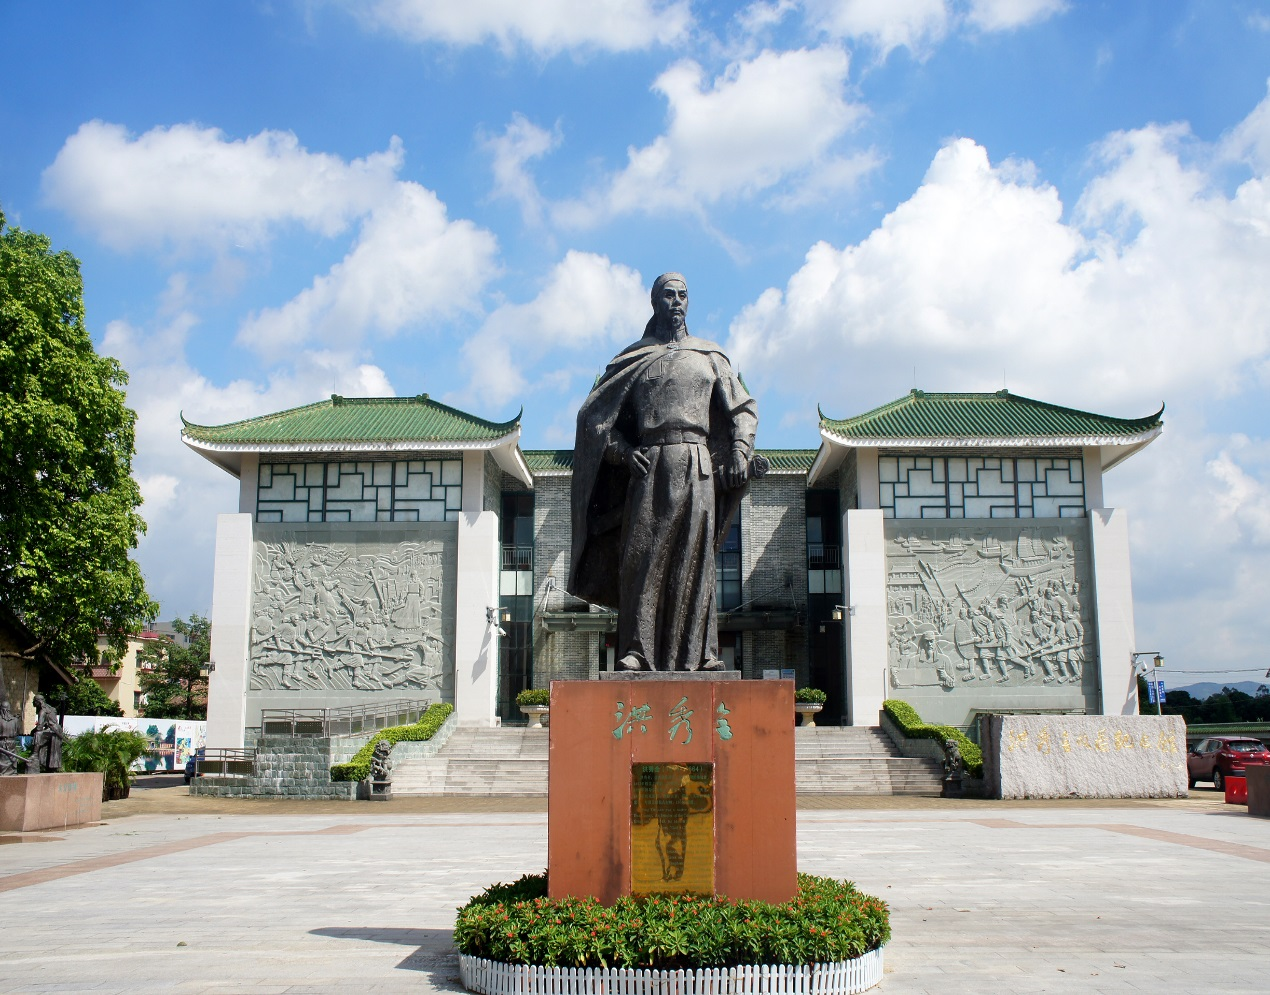 广州市花都区洪秀全纪念馆位于广州市花都区秀全街大村官禄,为纪念